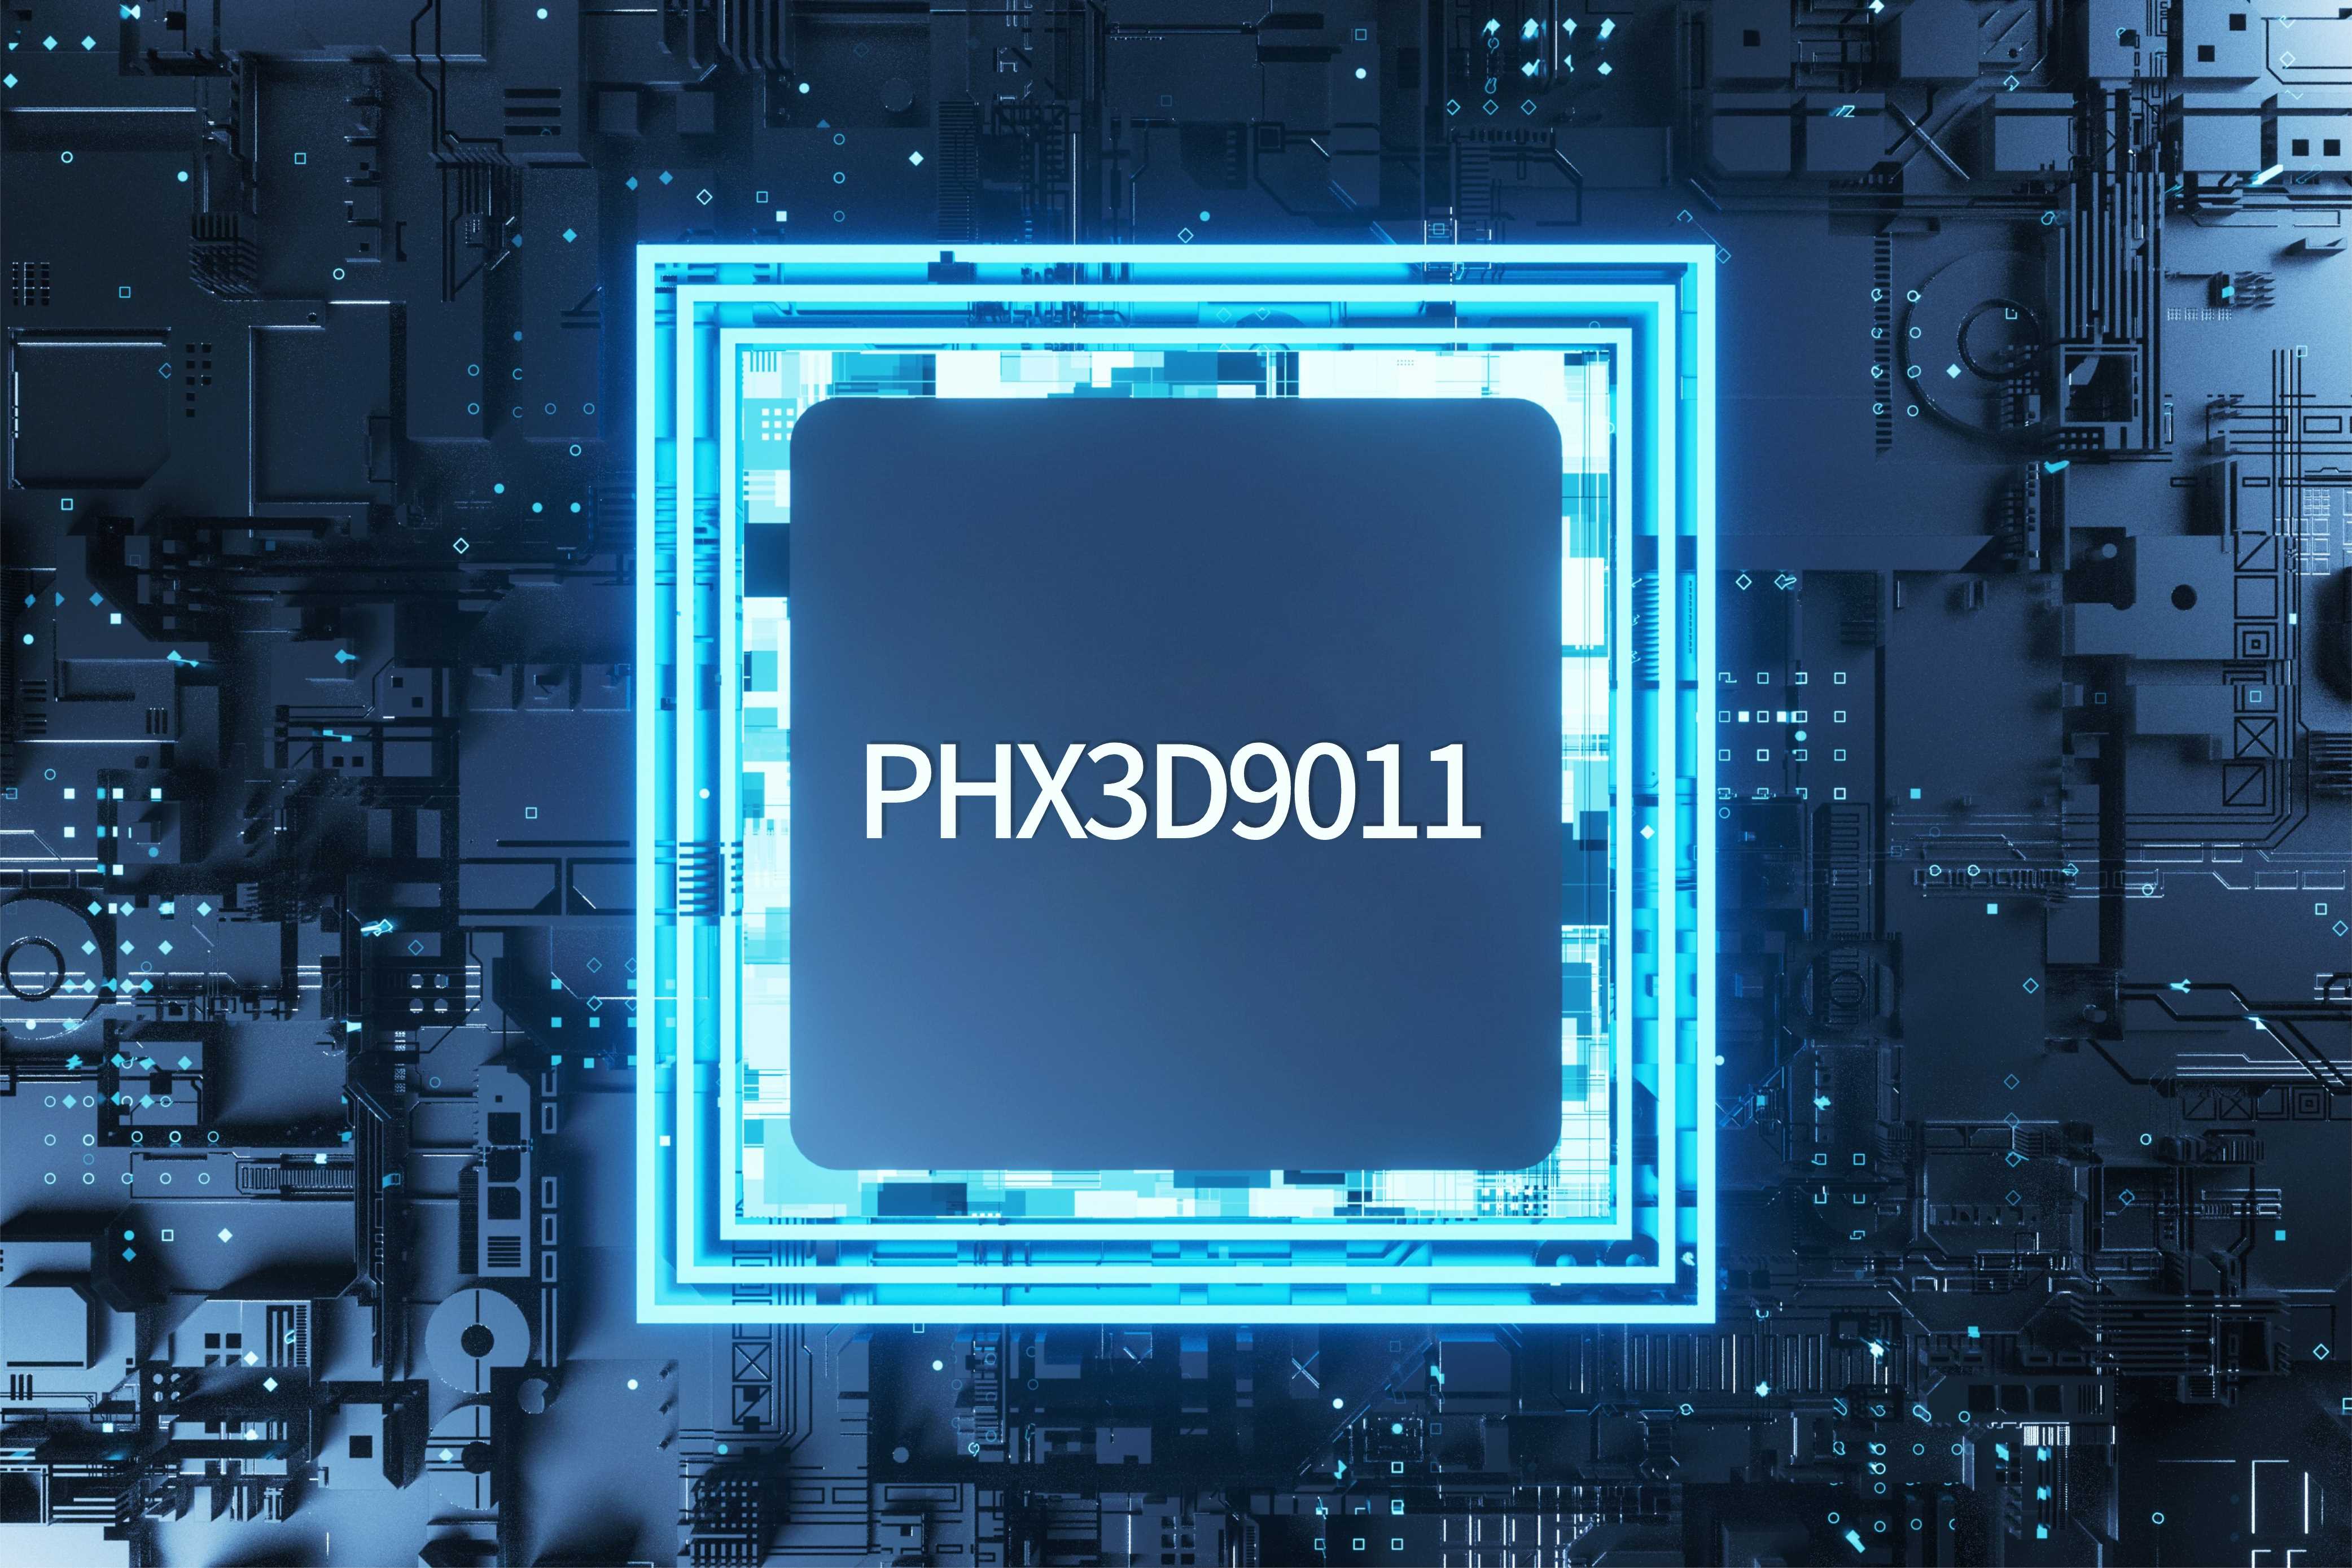 PHX3D9011